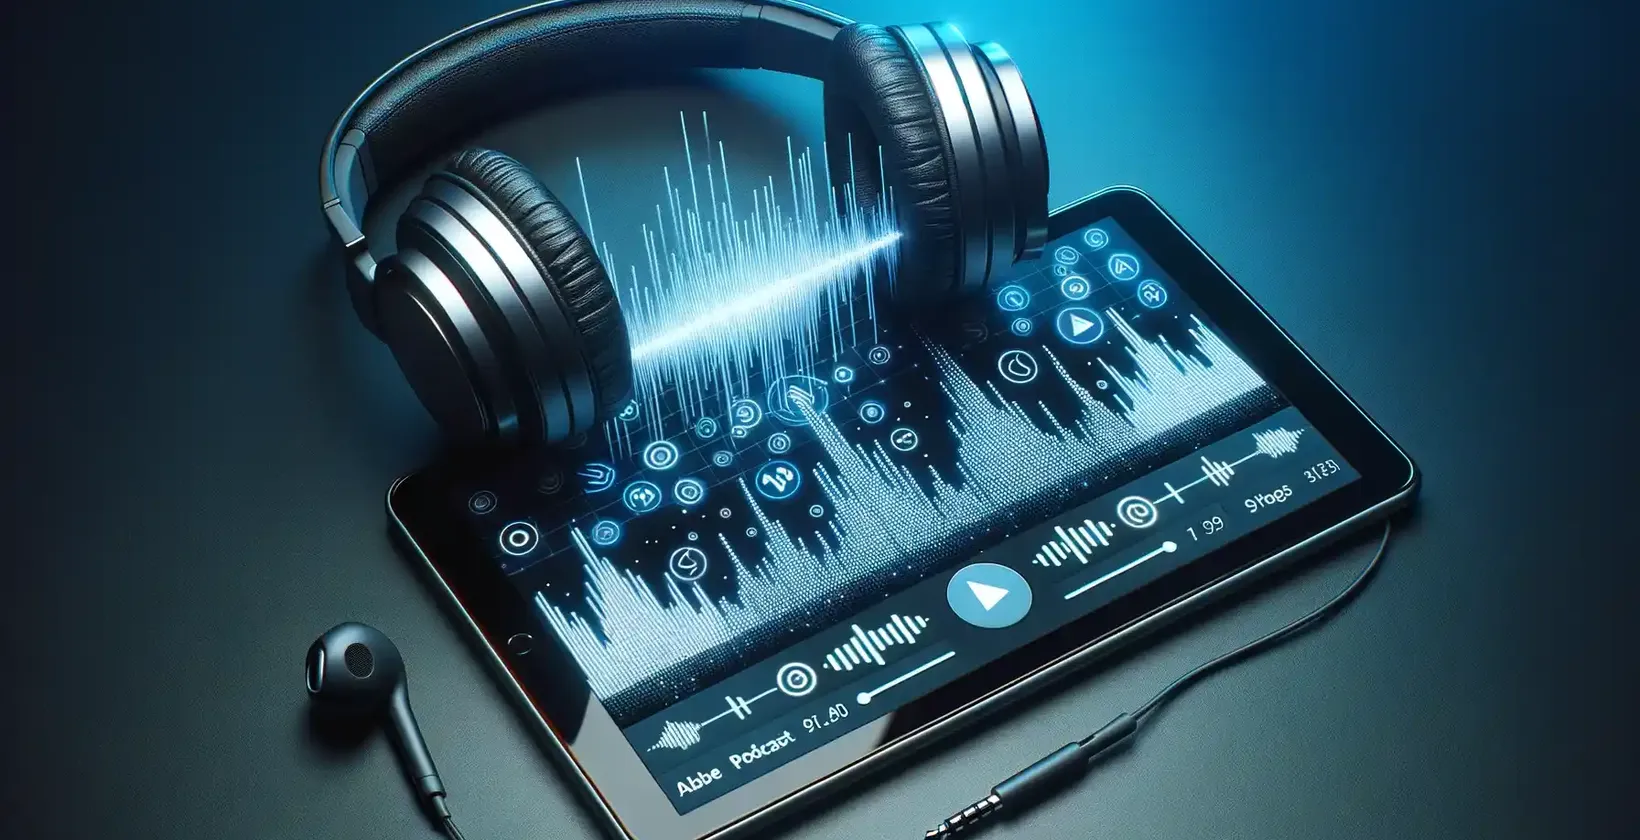 Tahvelarvuti ekraanil on helilained, digitaalsed nupud ja seaded sügava sinise taustaga vibreerivalt kujutatud